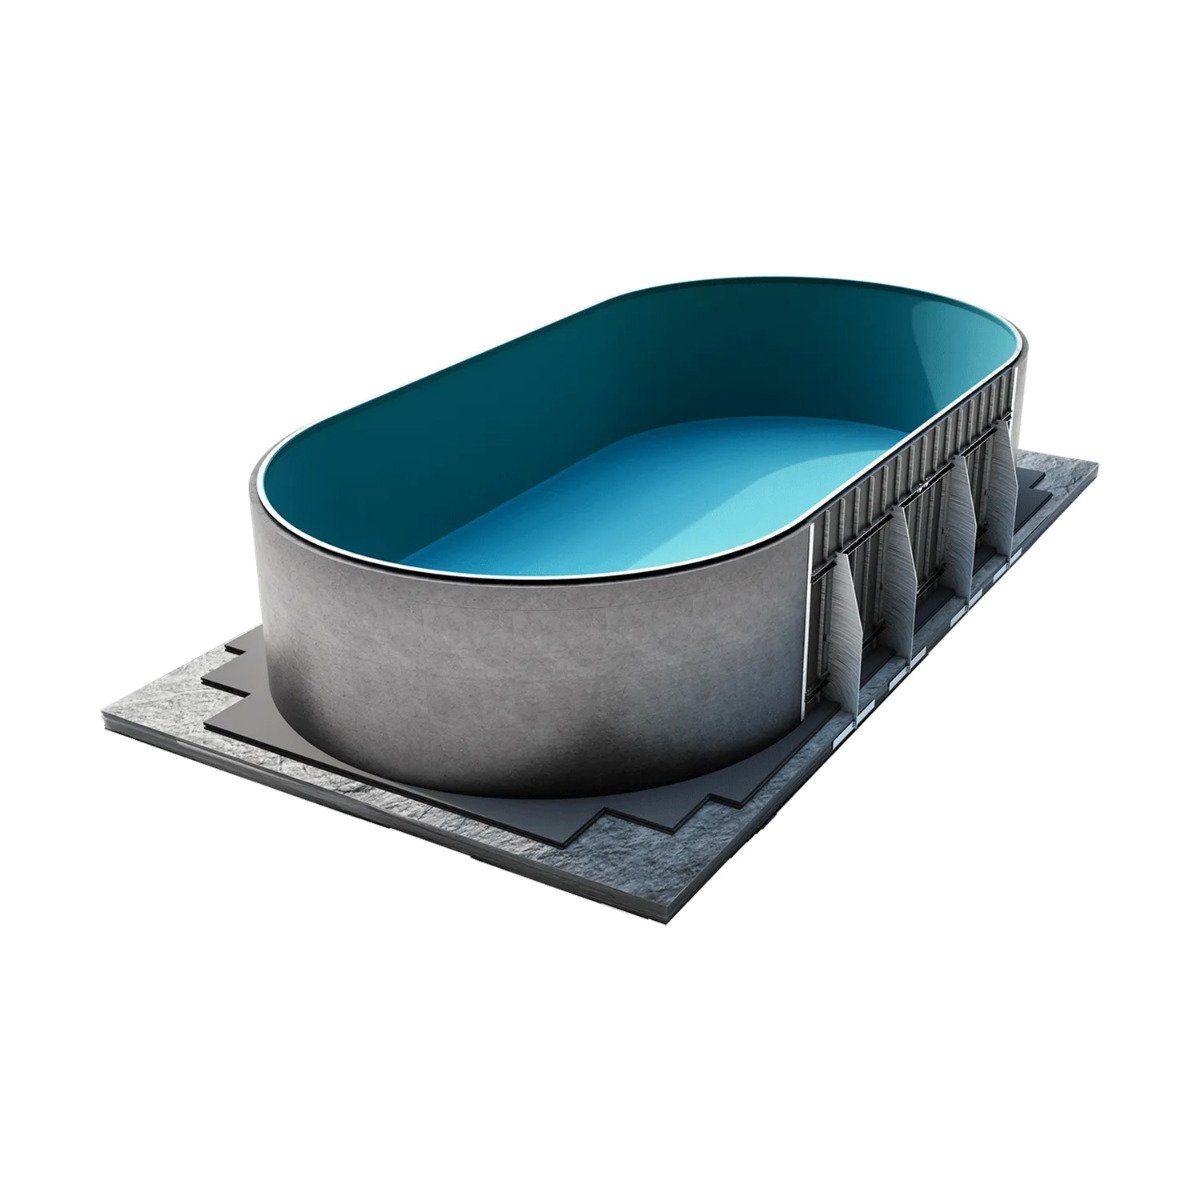 Paradies Pool Ovalpool, conZero Komplett System für Ovalformbecken 300x500x120cm